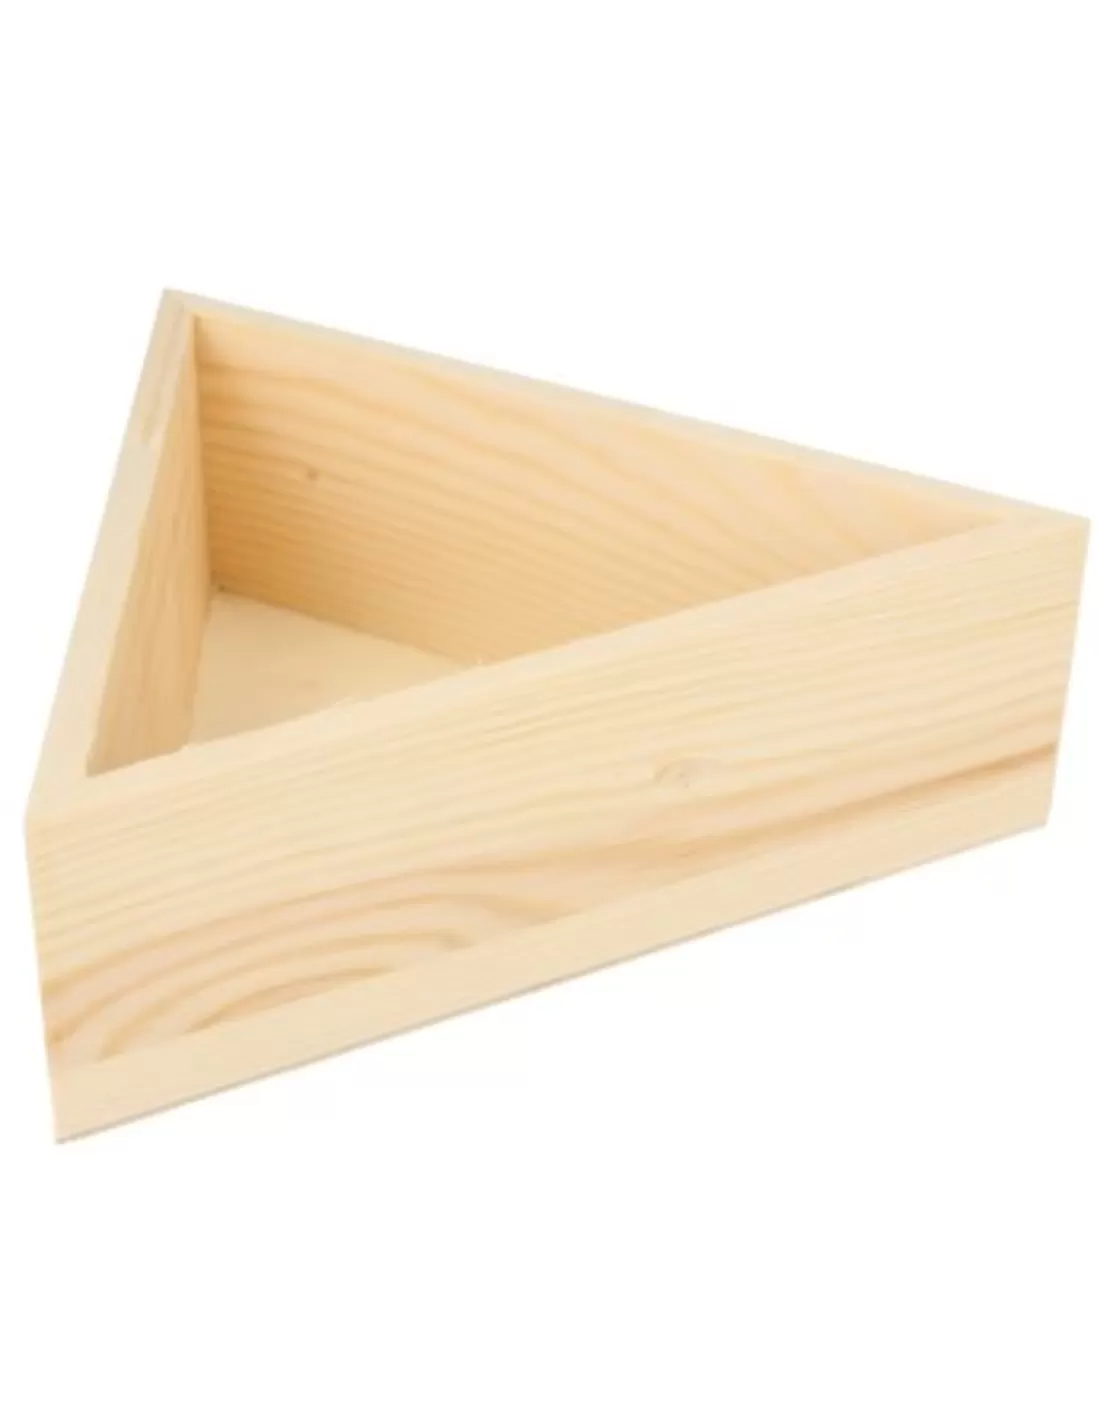 Verpakkingsdoosje / kistje hout driehoek 15x15 cm